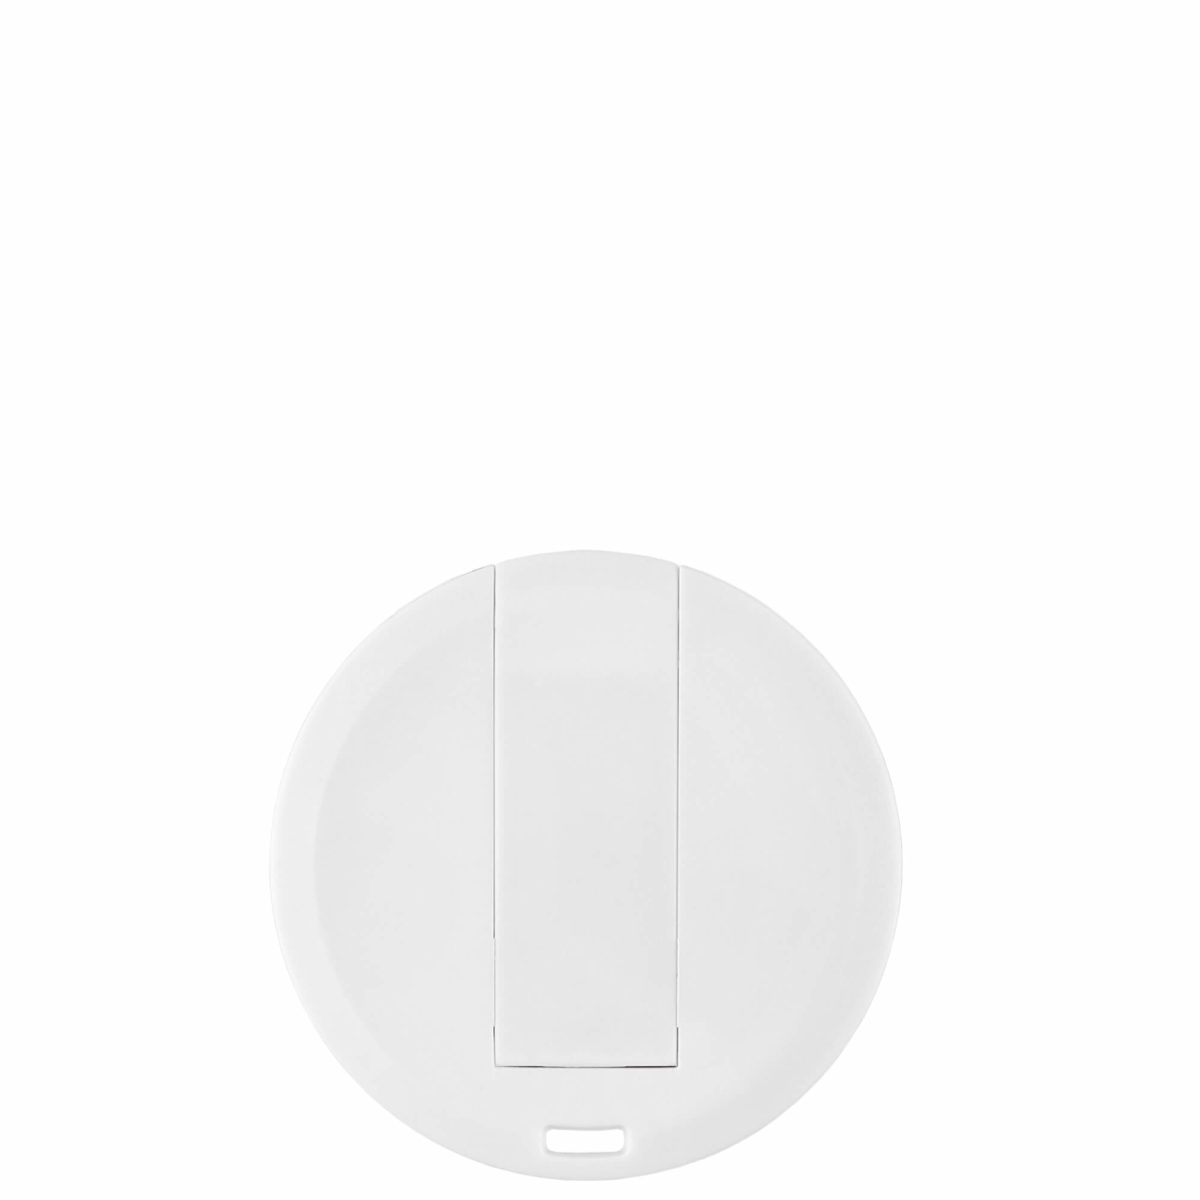 Круглая пластиковая флэшкарта белого цвета, идеально подход для УФ печати, размером 43 x 43 мм и толщеной всего 3 мм